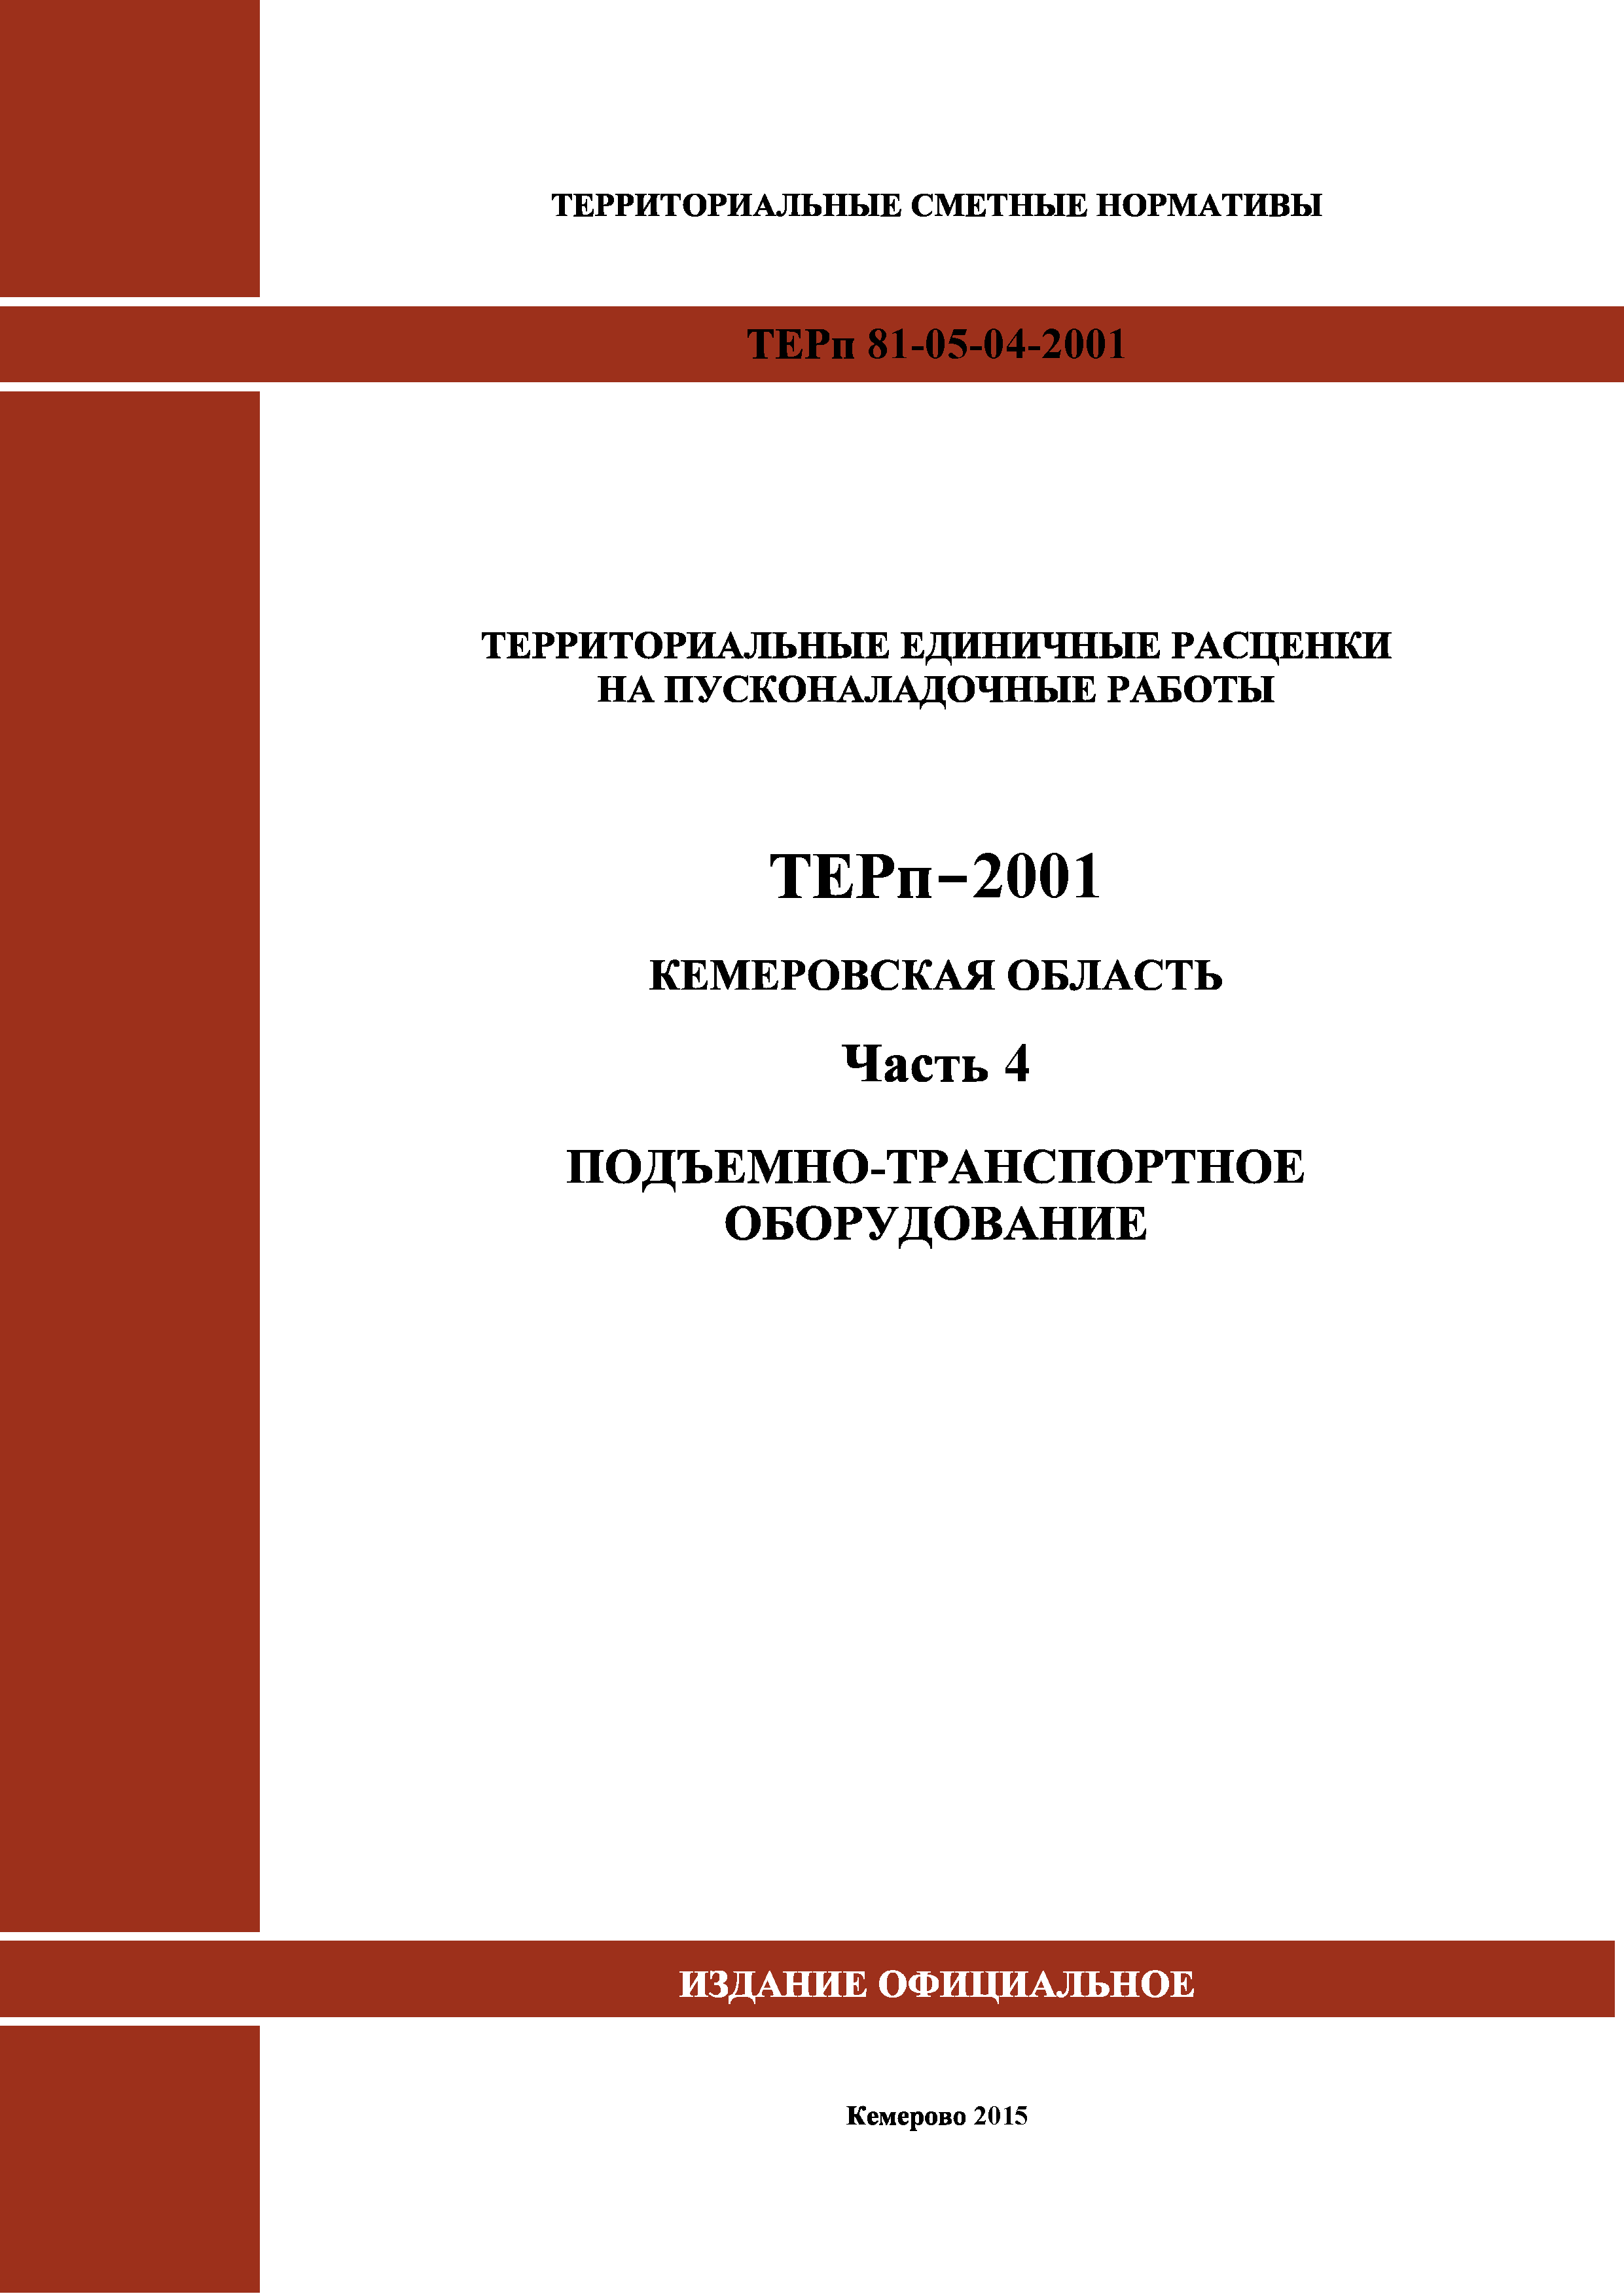 ТЕРп Кемеровская область 81-05-04-2001